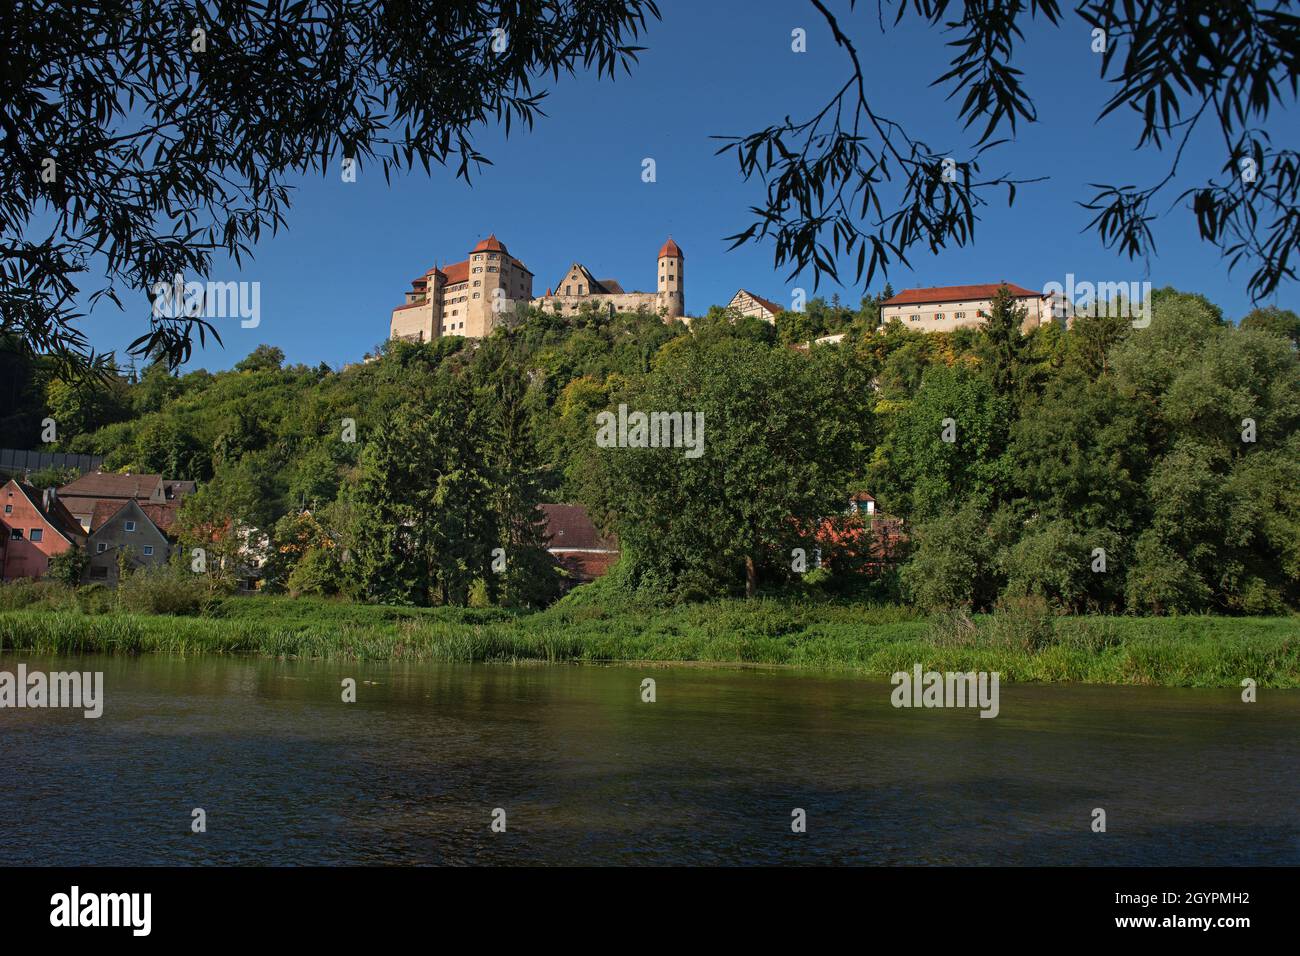 Die mittelalterliche Burg Harburg steht auf einem Felsen mit Blick auf die Stadt Harburg in Bayern Stockfoto